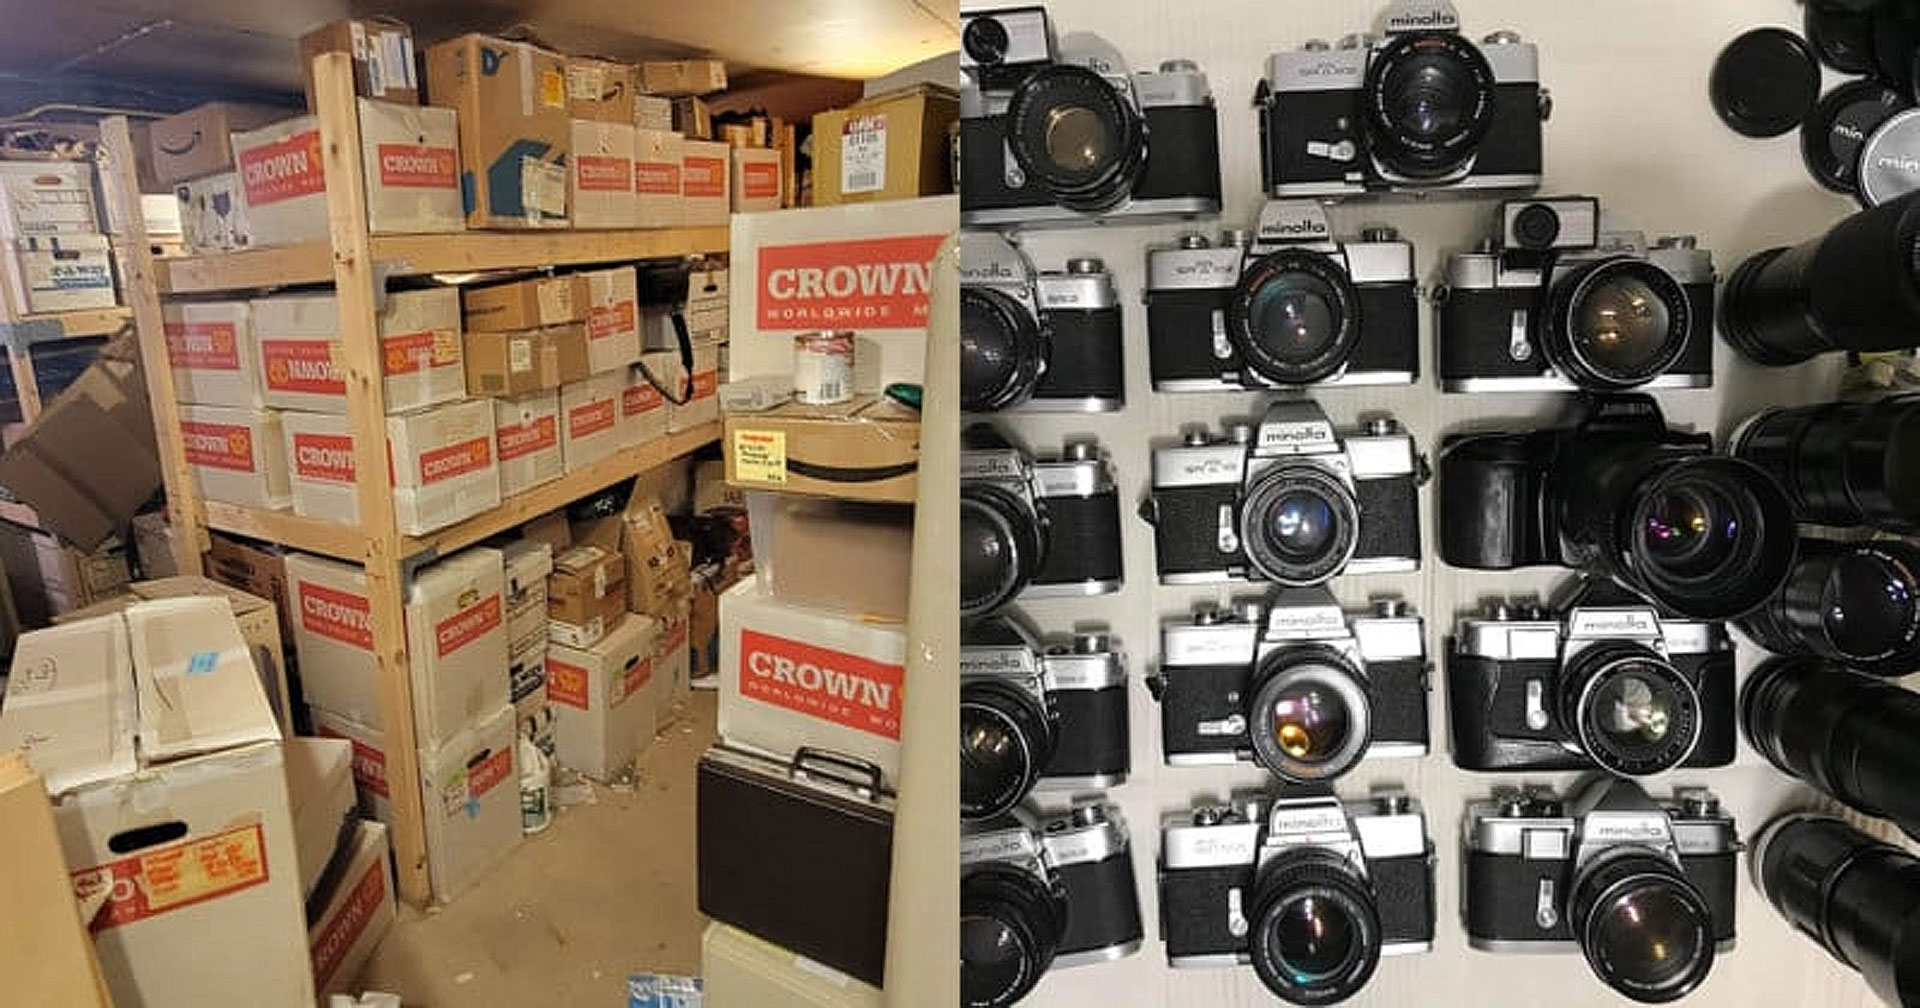 โชคหล่นทับ! คู่รักเจอขุมทรัพย์กล้องเลนส์กว่า 2,000 ตัว ระหว่างทำความสะอาดห้องเช่าเก็บของ